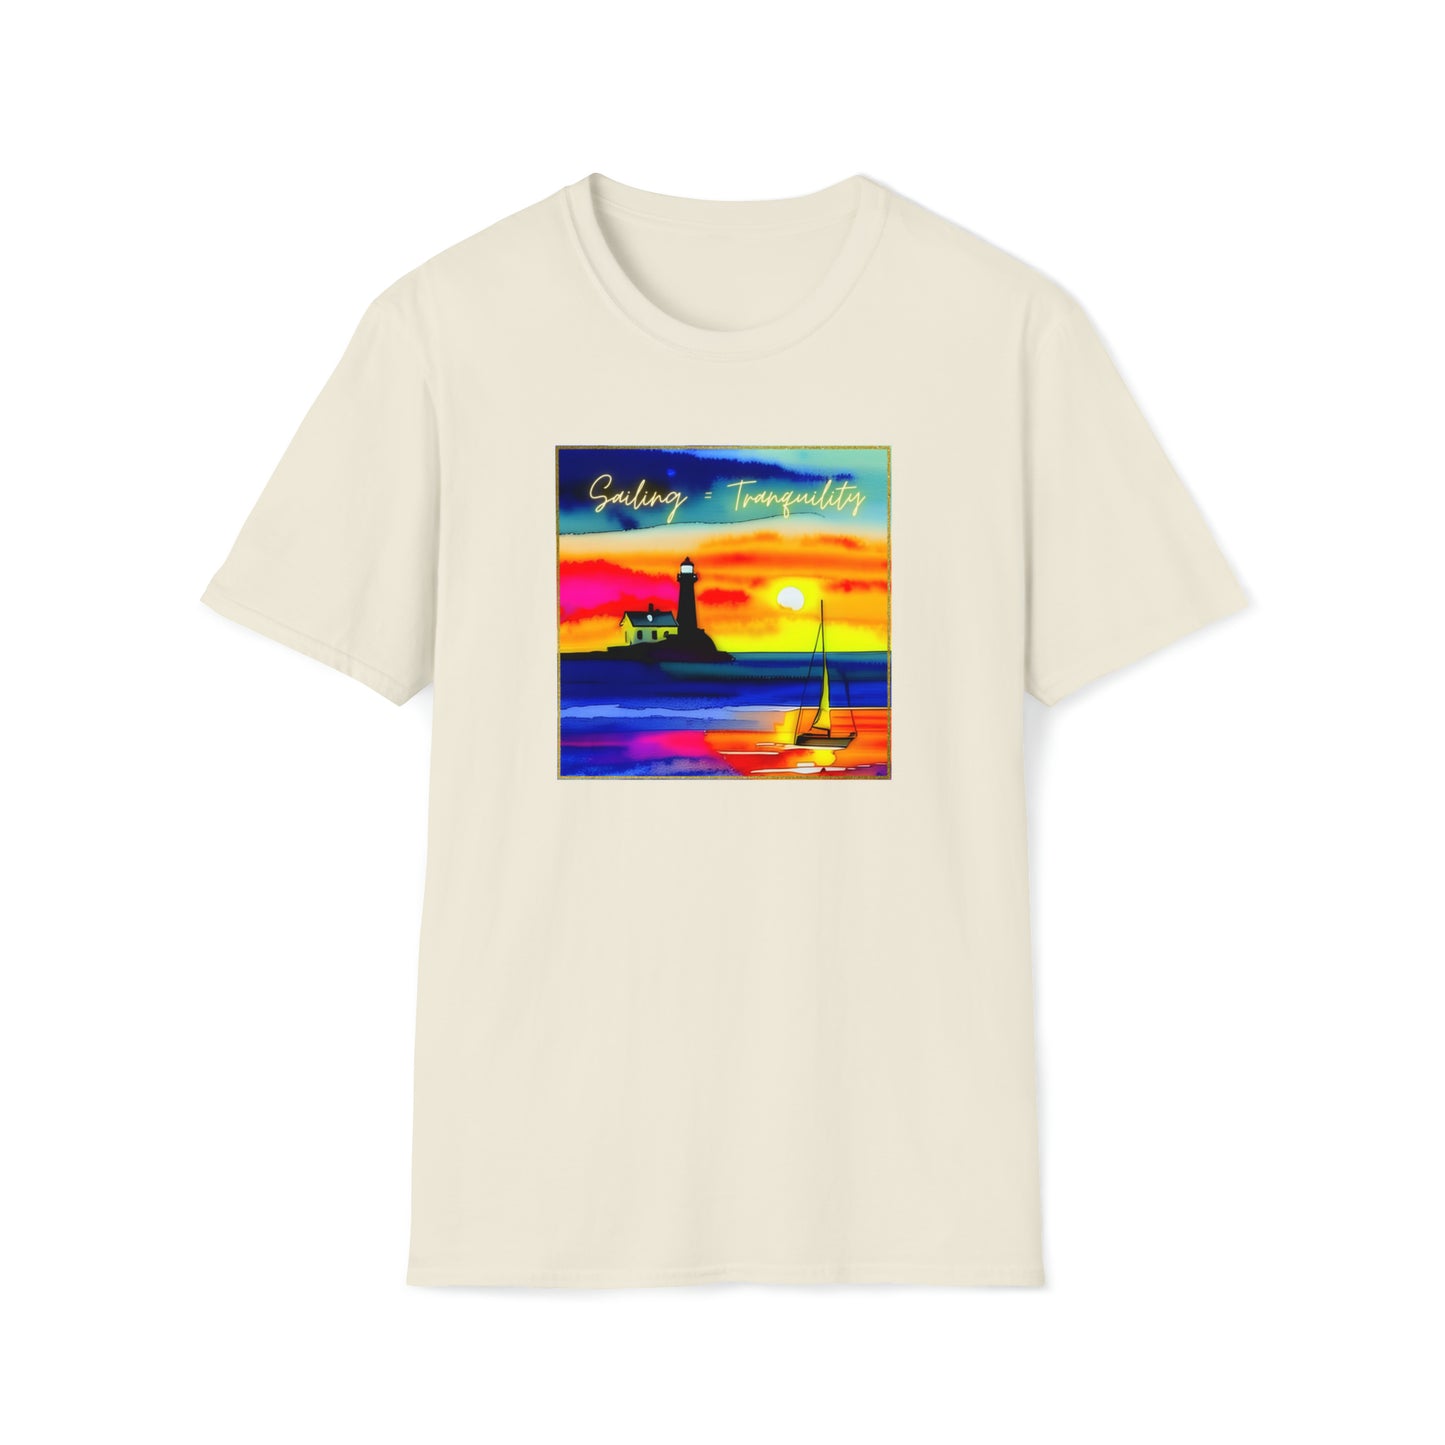 Sailing = Tranquility - Unisex Softstyle T-Shirt